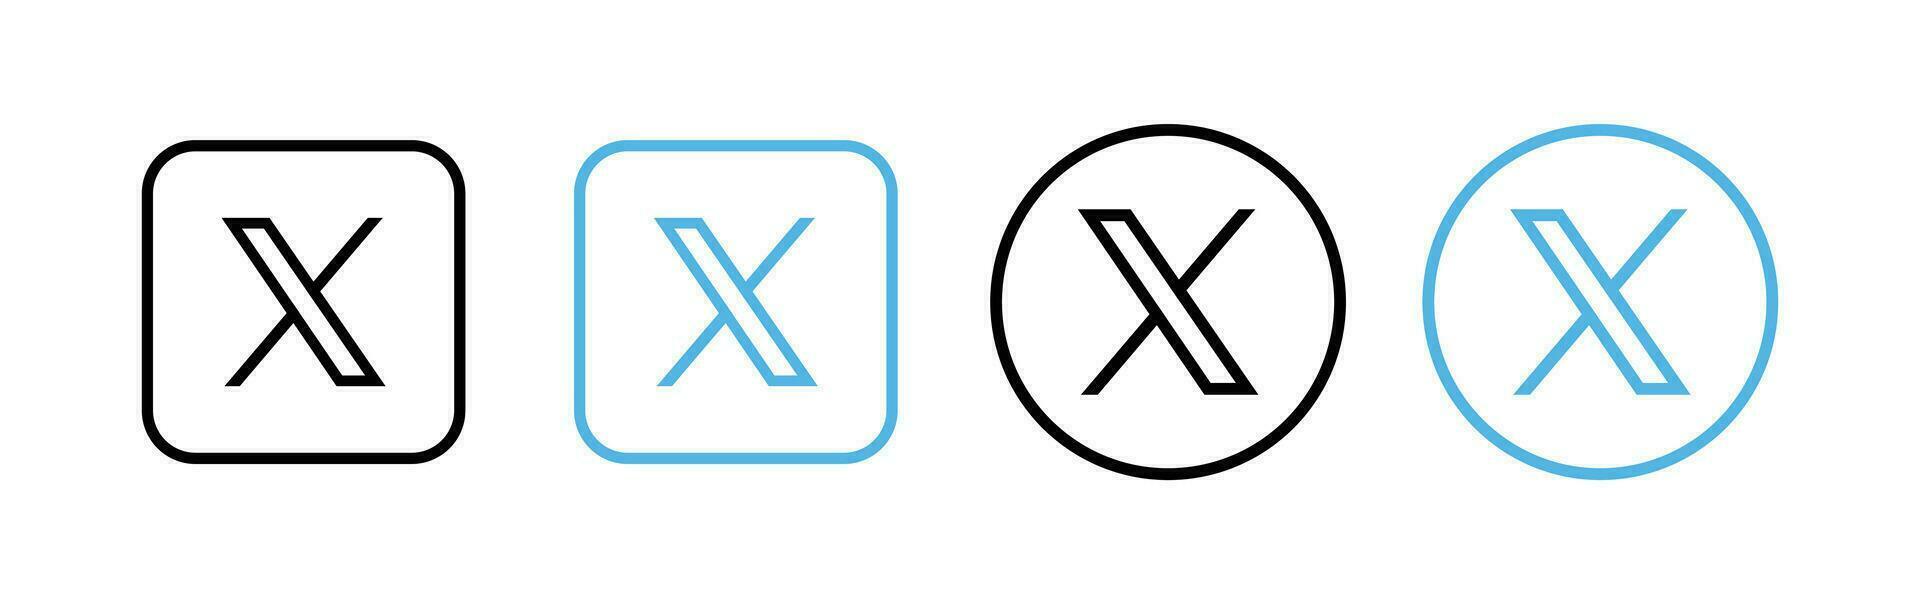 gorjeo nuevo logo . gorjeo iconos nuevo gorjeo logo X 2023. X social medios de comunicación icono. vector